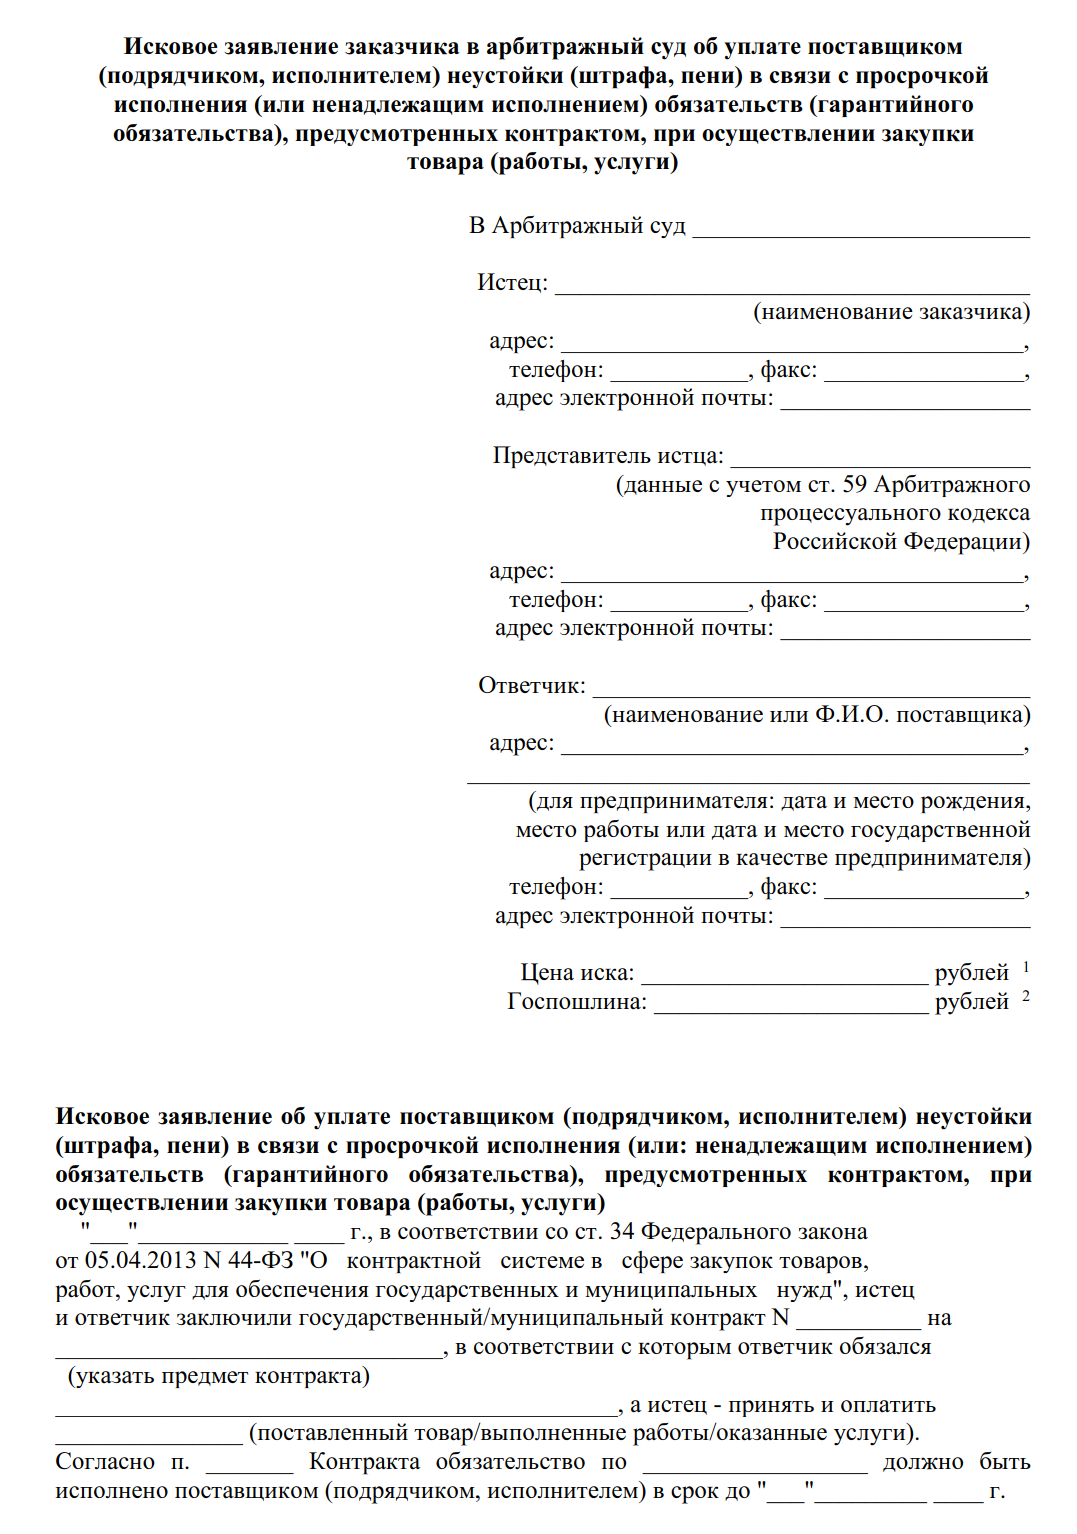 Как узнать о готовности патента на работу в москве по телефону